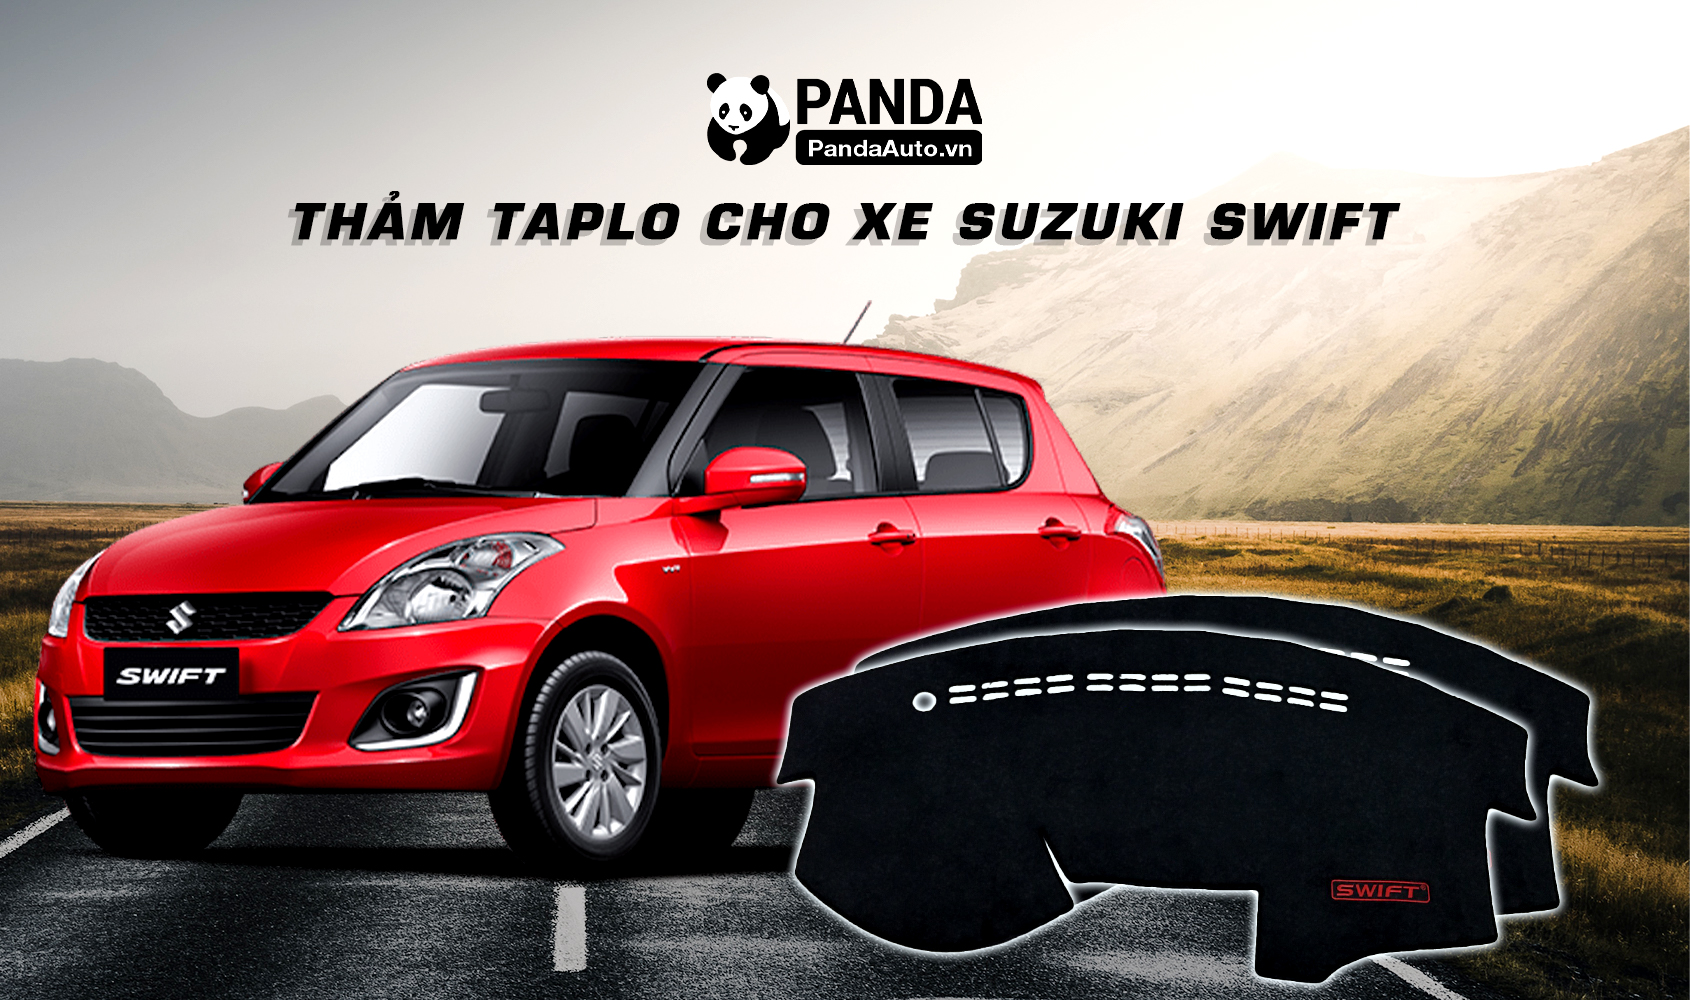 Chào mừng anh/chị đến với Panda Auto,